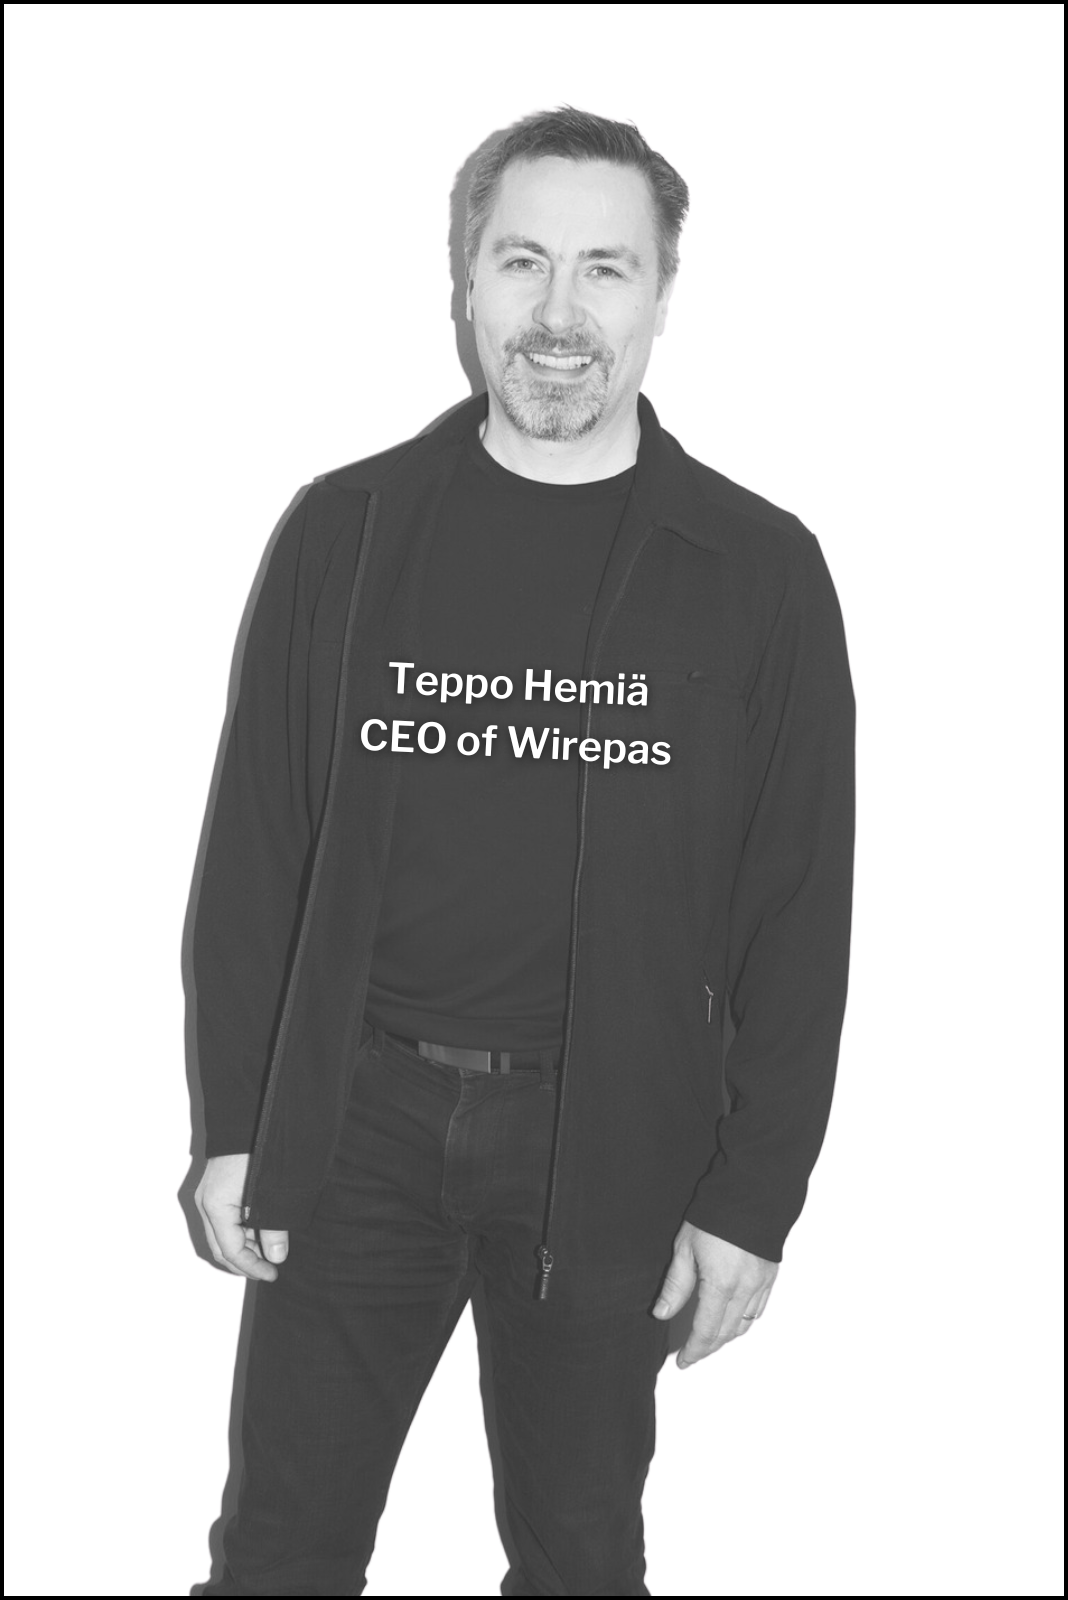 - Teppo Hemiä, CEO of Wirepas